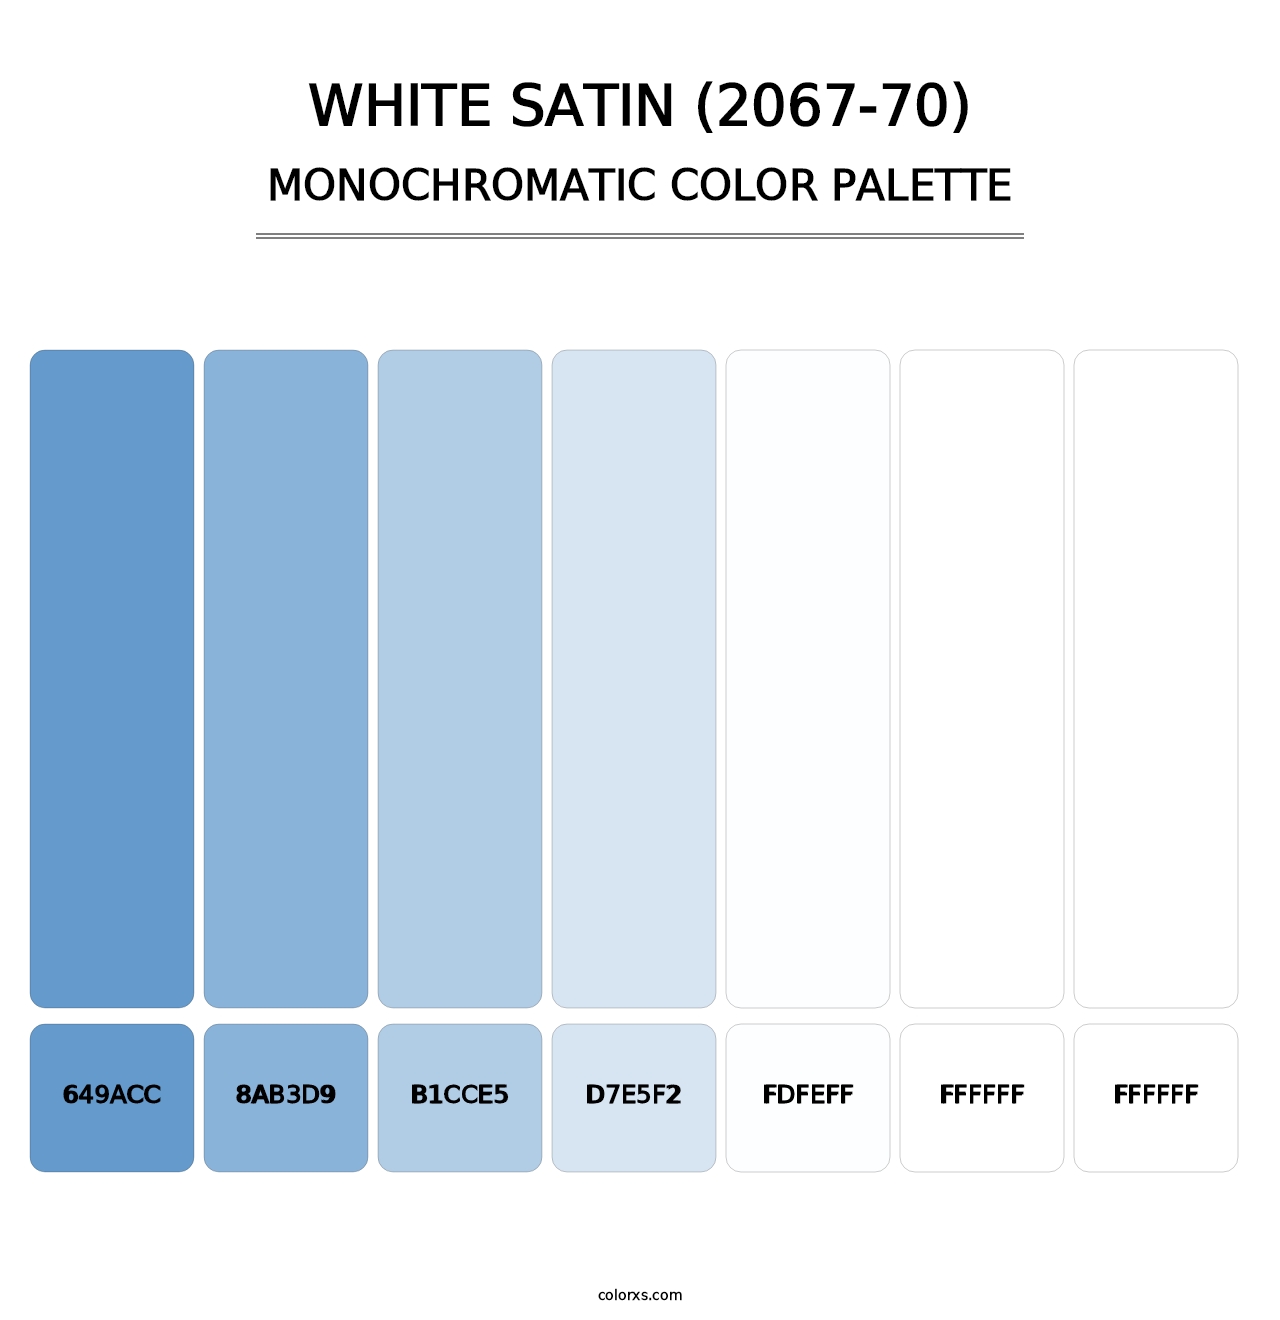 White Satin (2067-70) - Monochromatic Color Palette